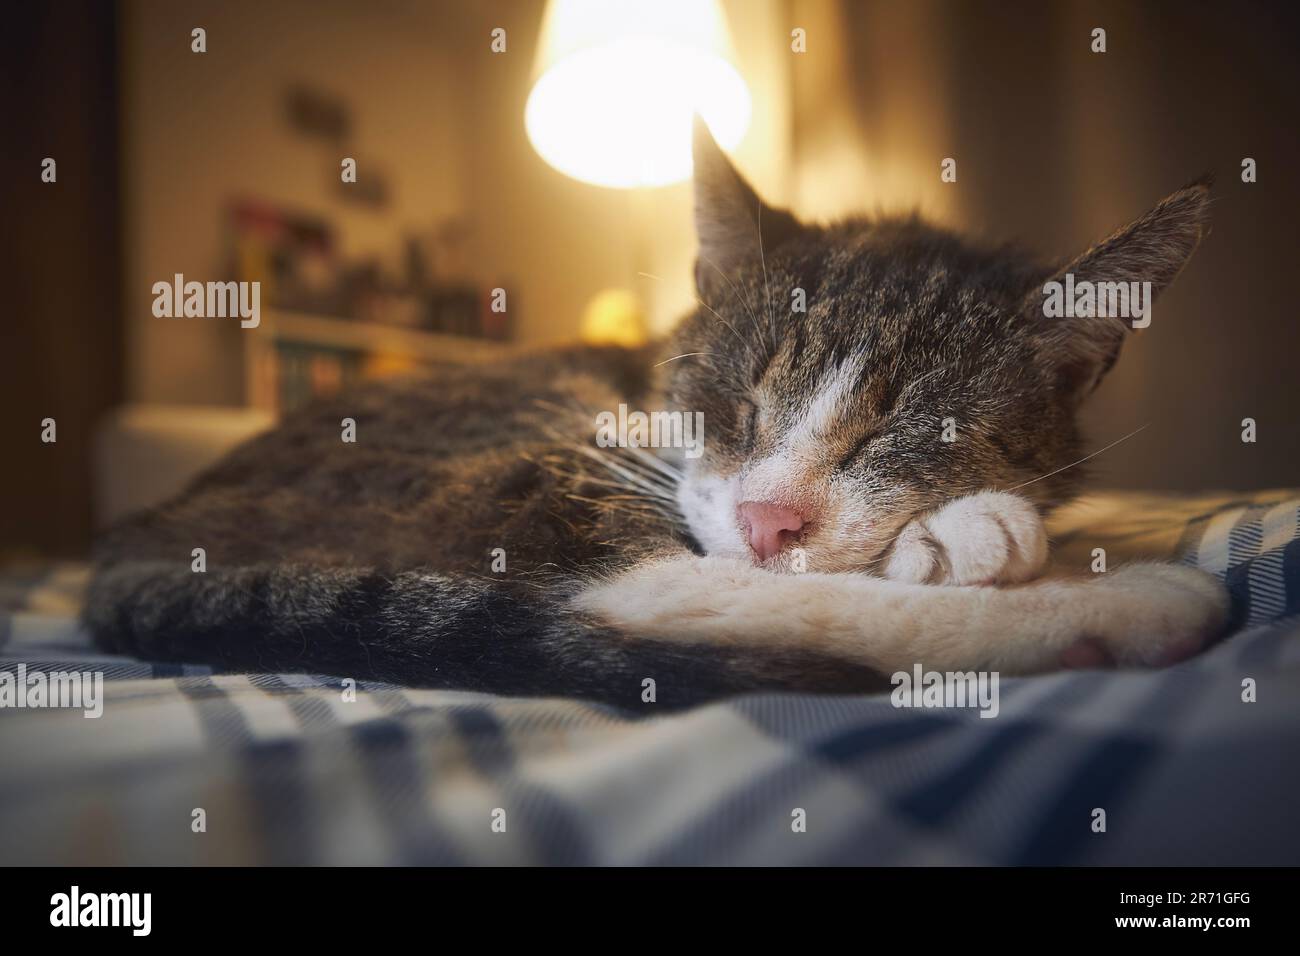 Süße alte Katze, die auf dem Bett liegt und nachts in einem gemütlichen Schlafzimmer schläft. Haustier im Seniorenalter. Stockfoto